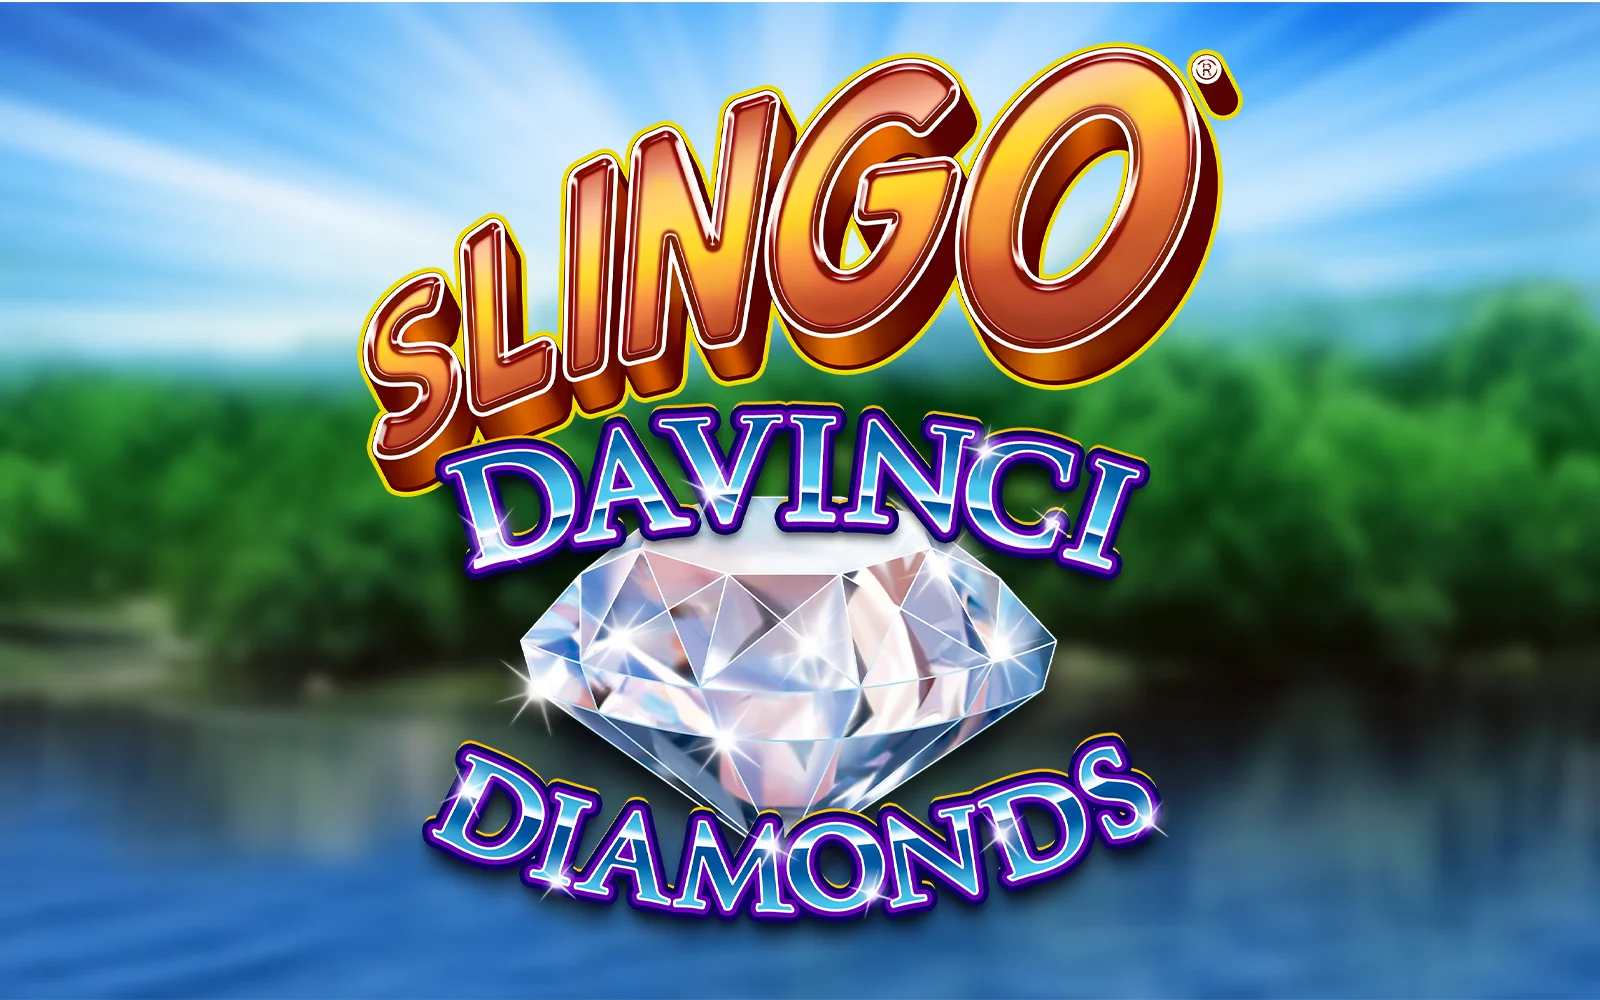 Spielen Sie Slingo Da Vinci Diamonds auf Starcasino.be-Online-Casino